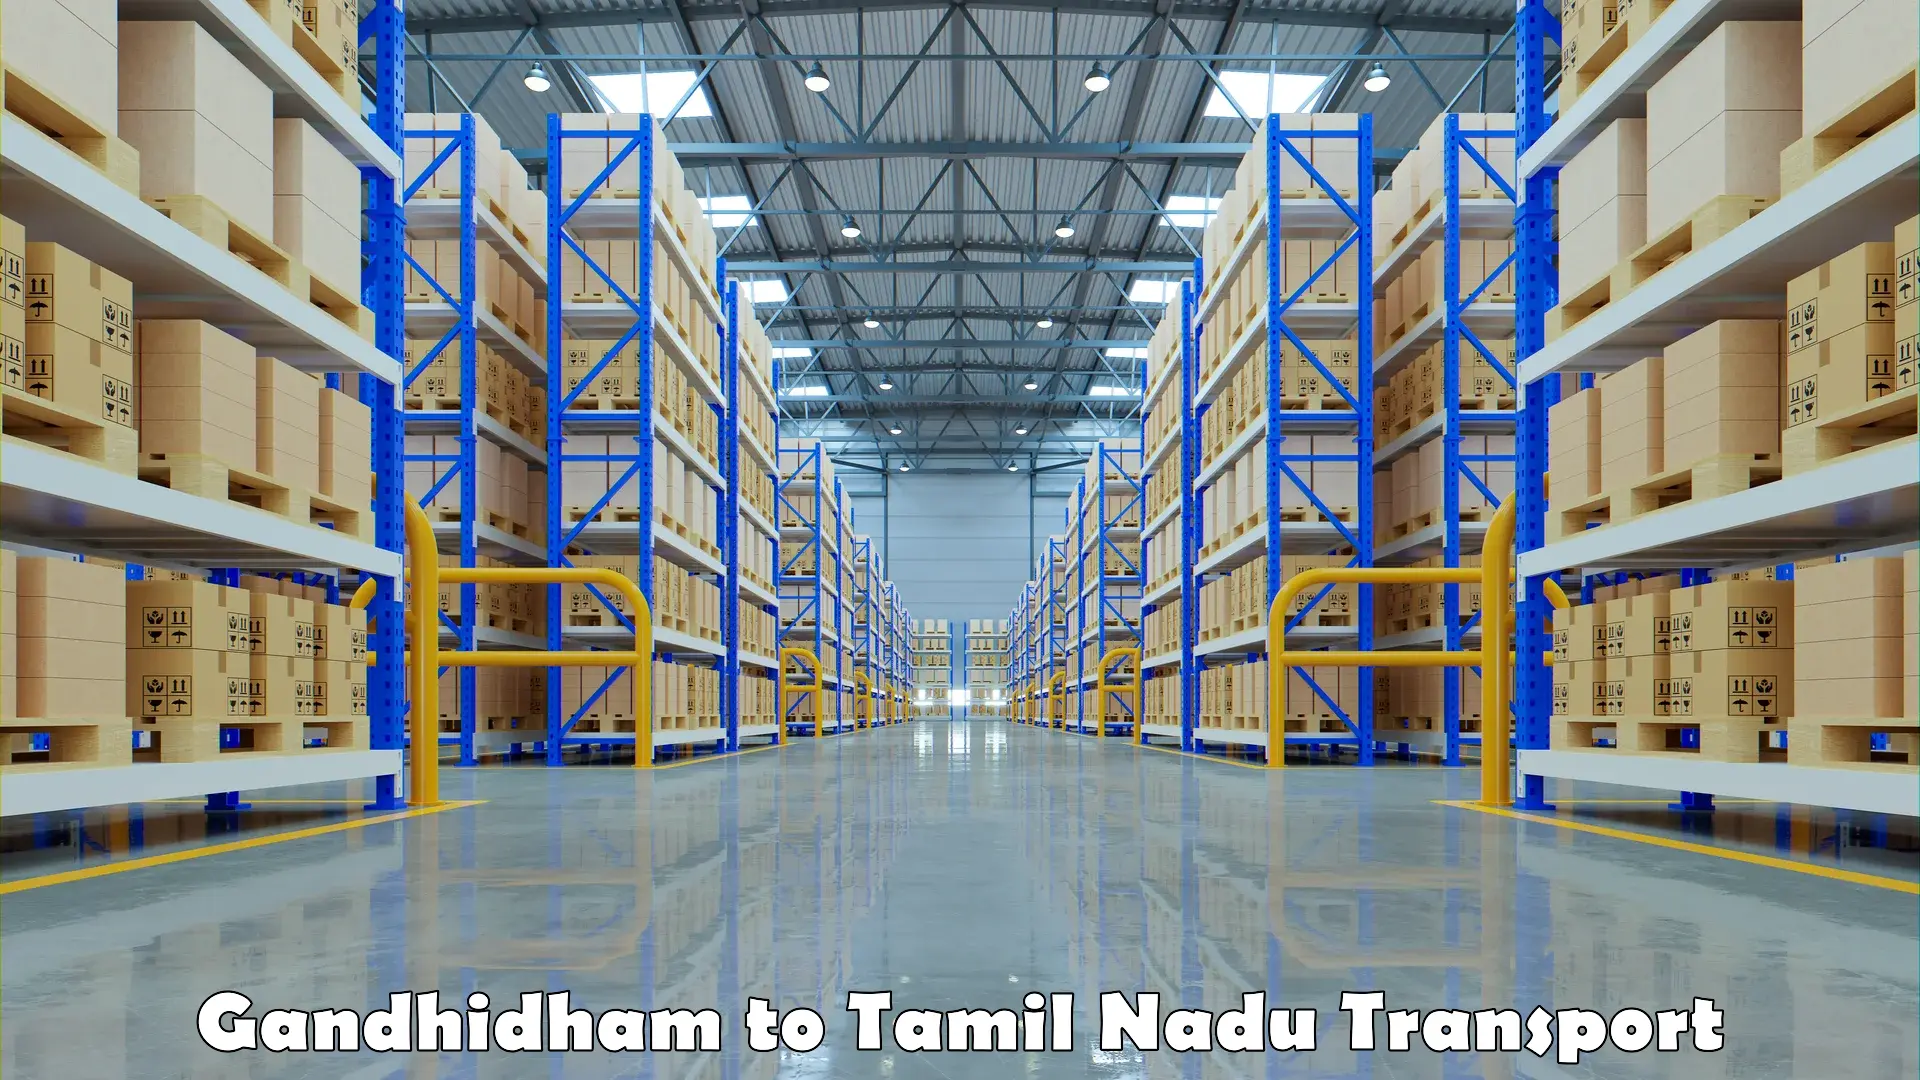 Pick up transport service Gandhidham to Tambaram